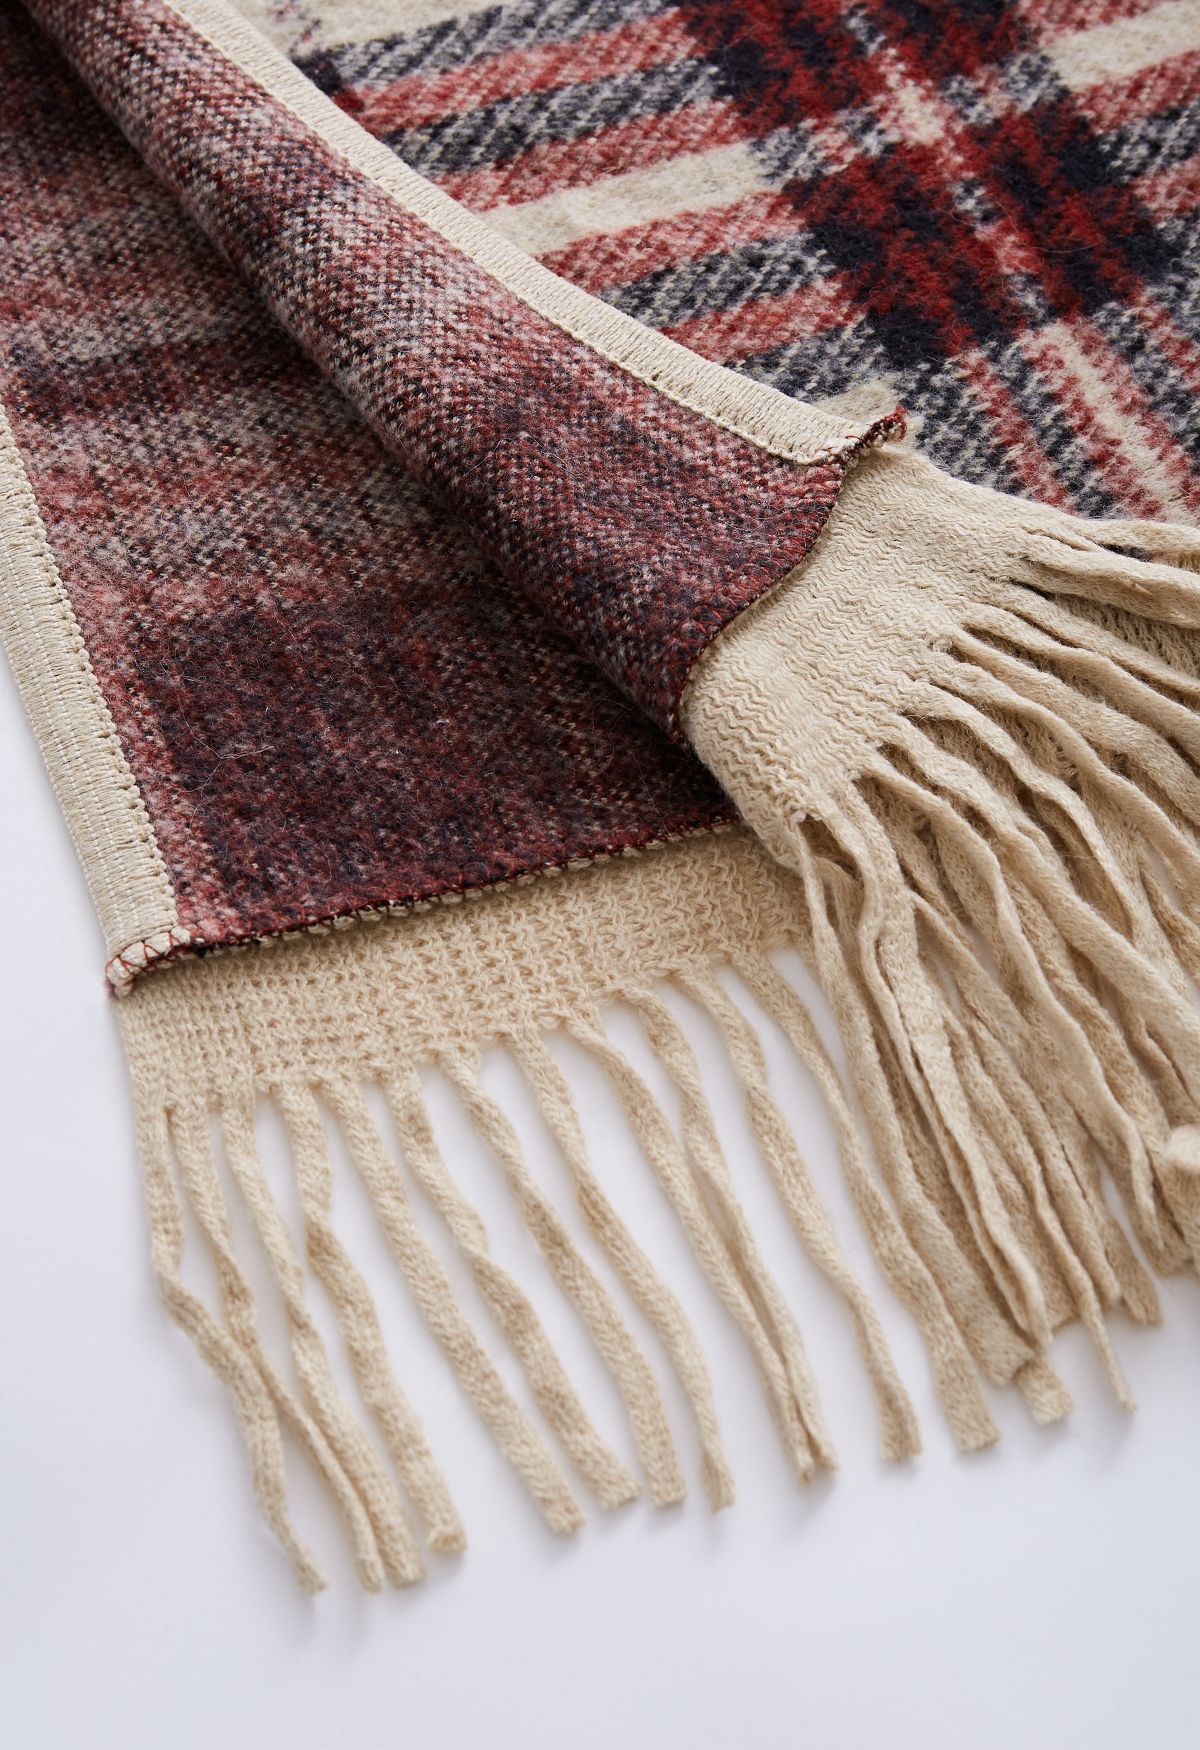 Poncho in misto lana scozzese con cappuccio e frange in pelliccia sintetica color cammello